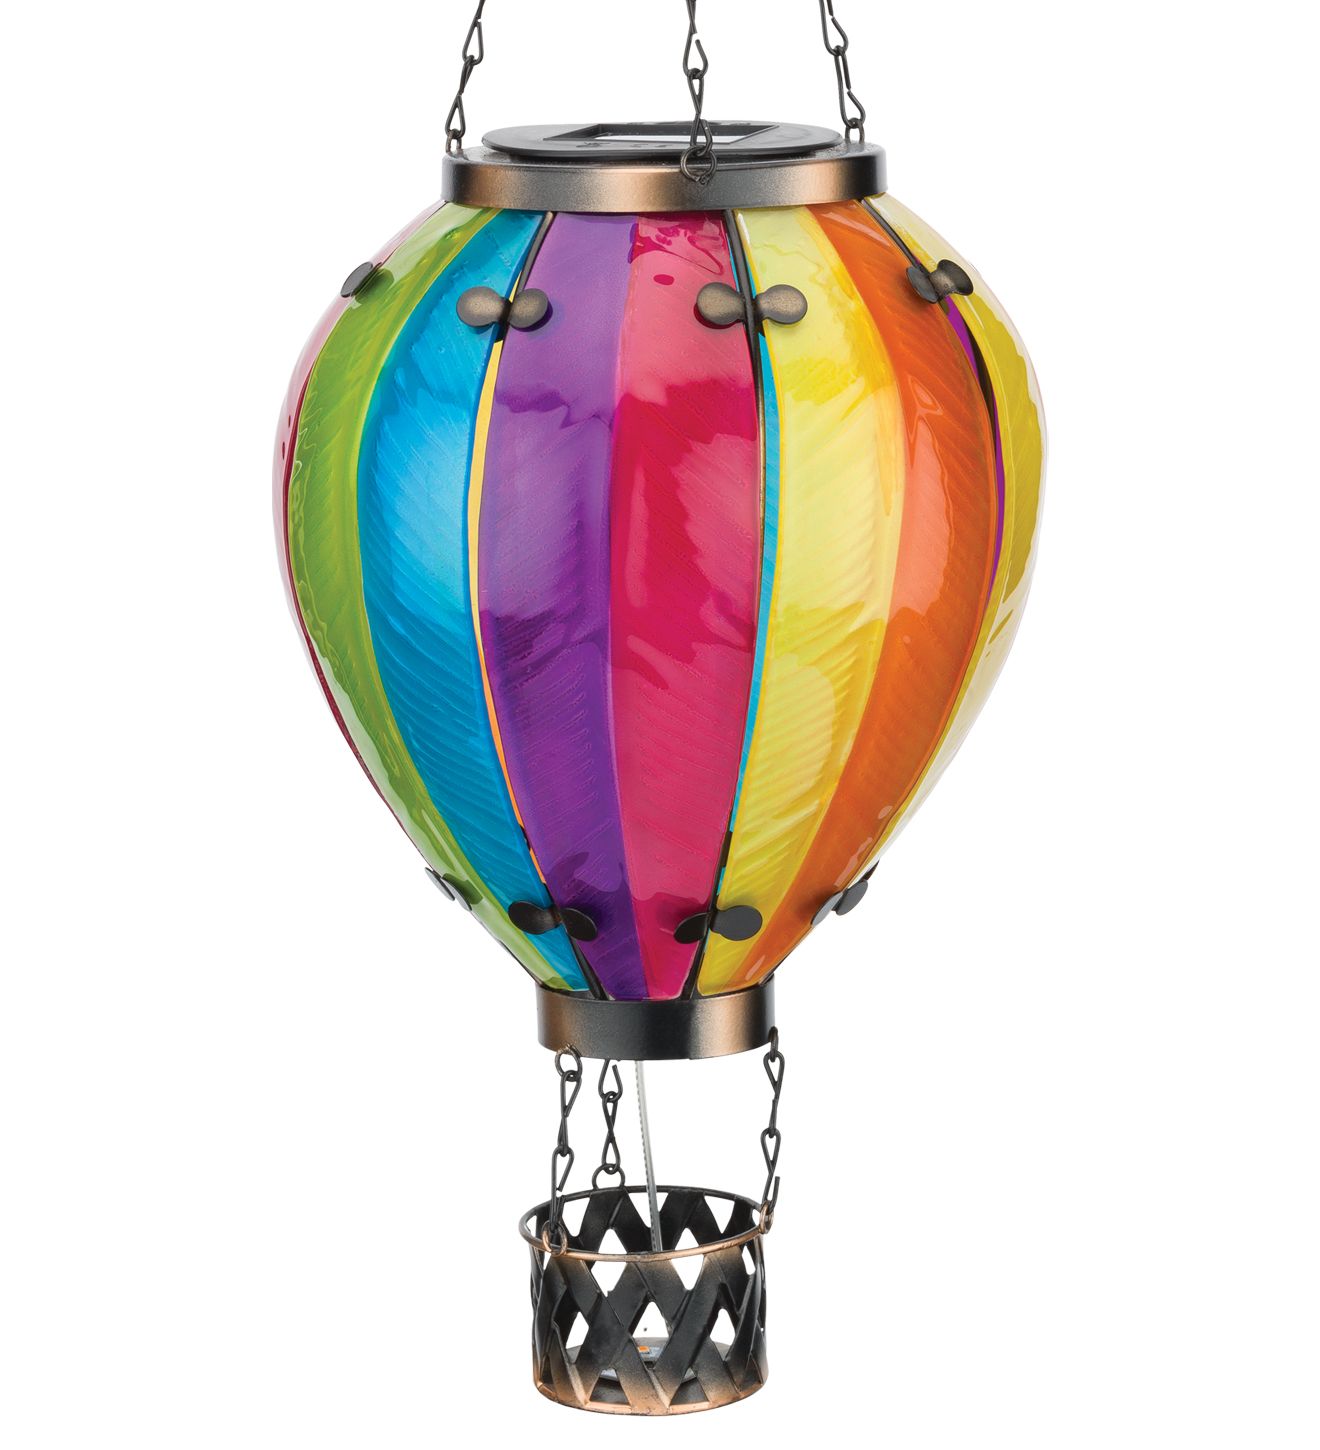 Small Solar Hot Air Balloon - Rainbow